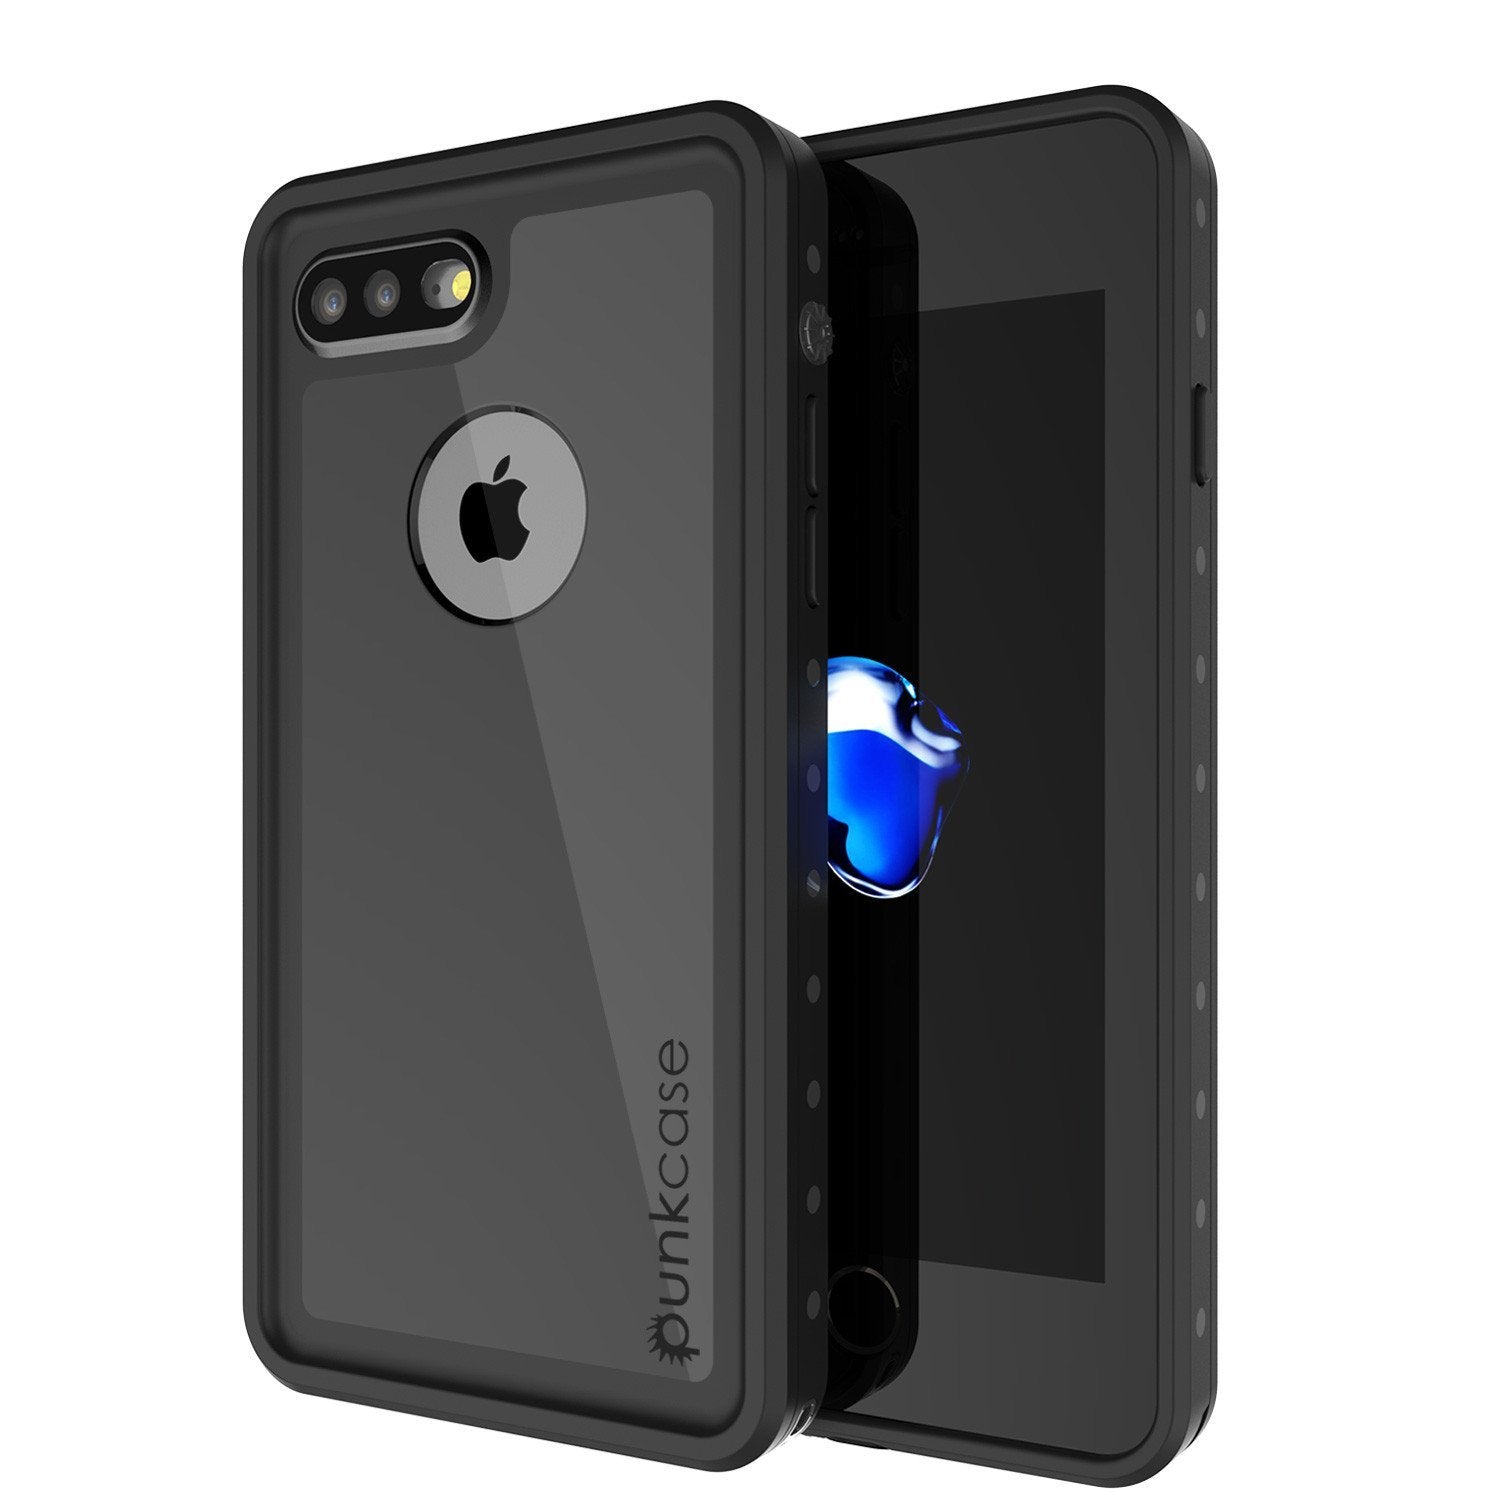 iPhone 8 Plus Waterproof IP68 Case, Punkcase [Black] [StudStar Series] [Slim Fit] [Dirtproof] - PunkCase NZ